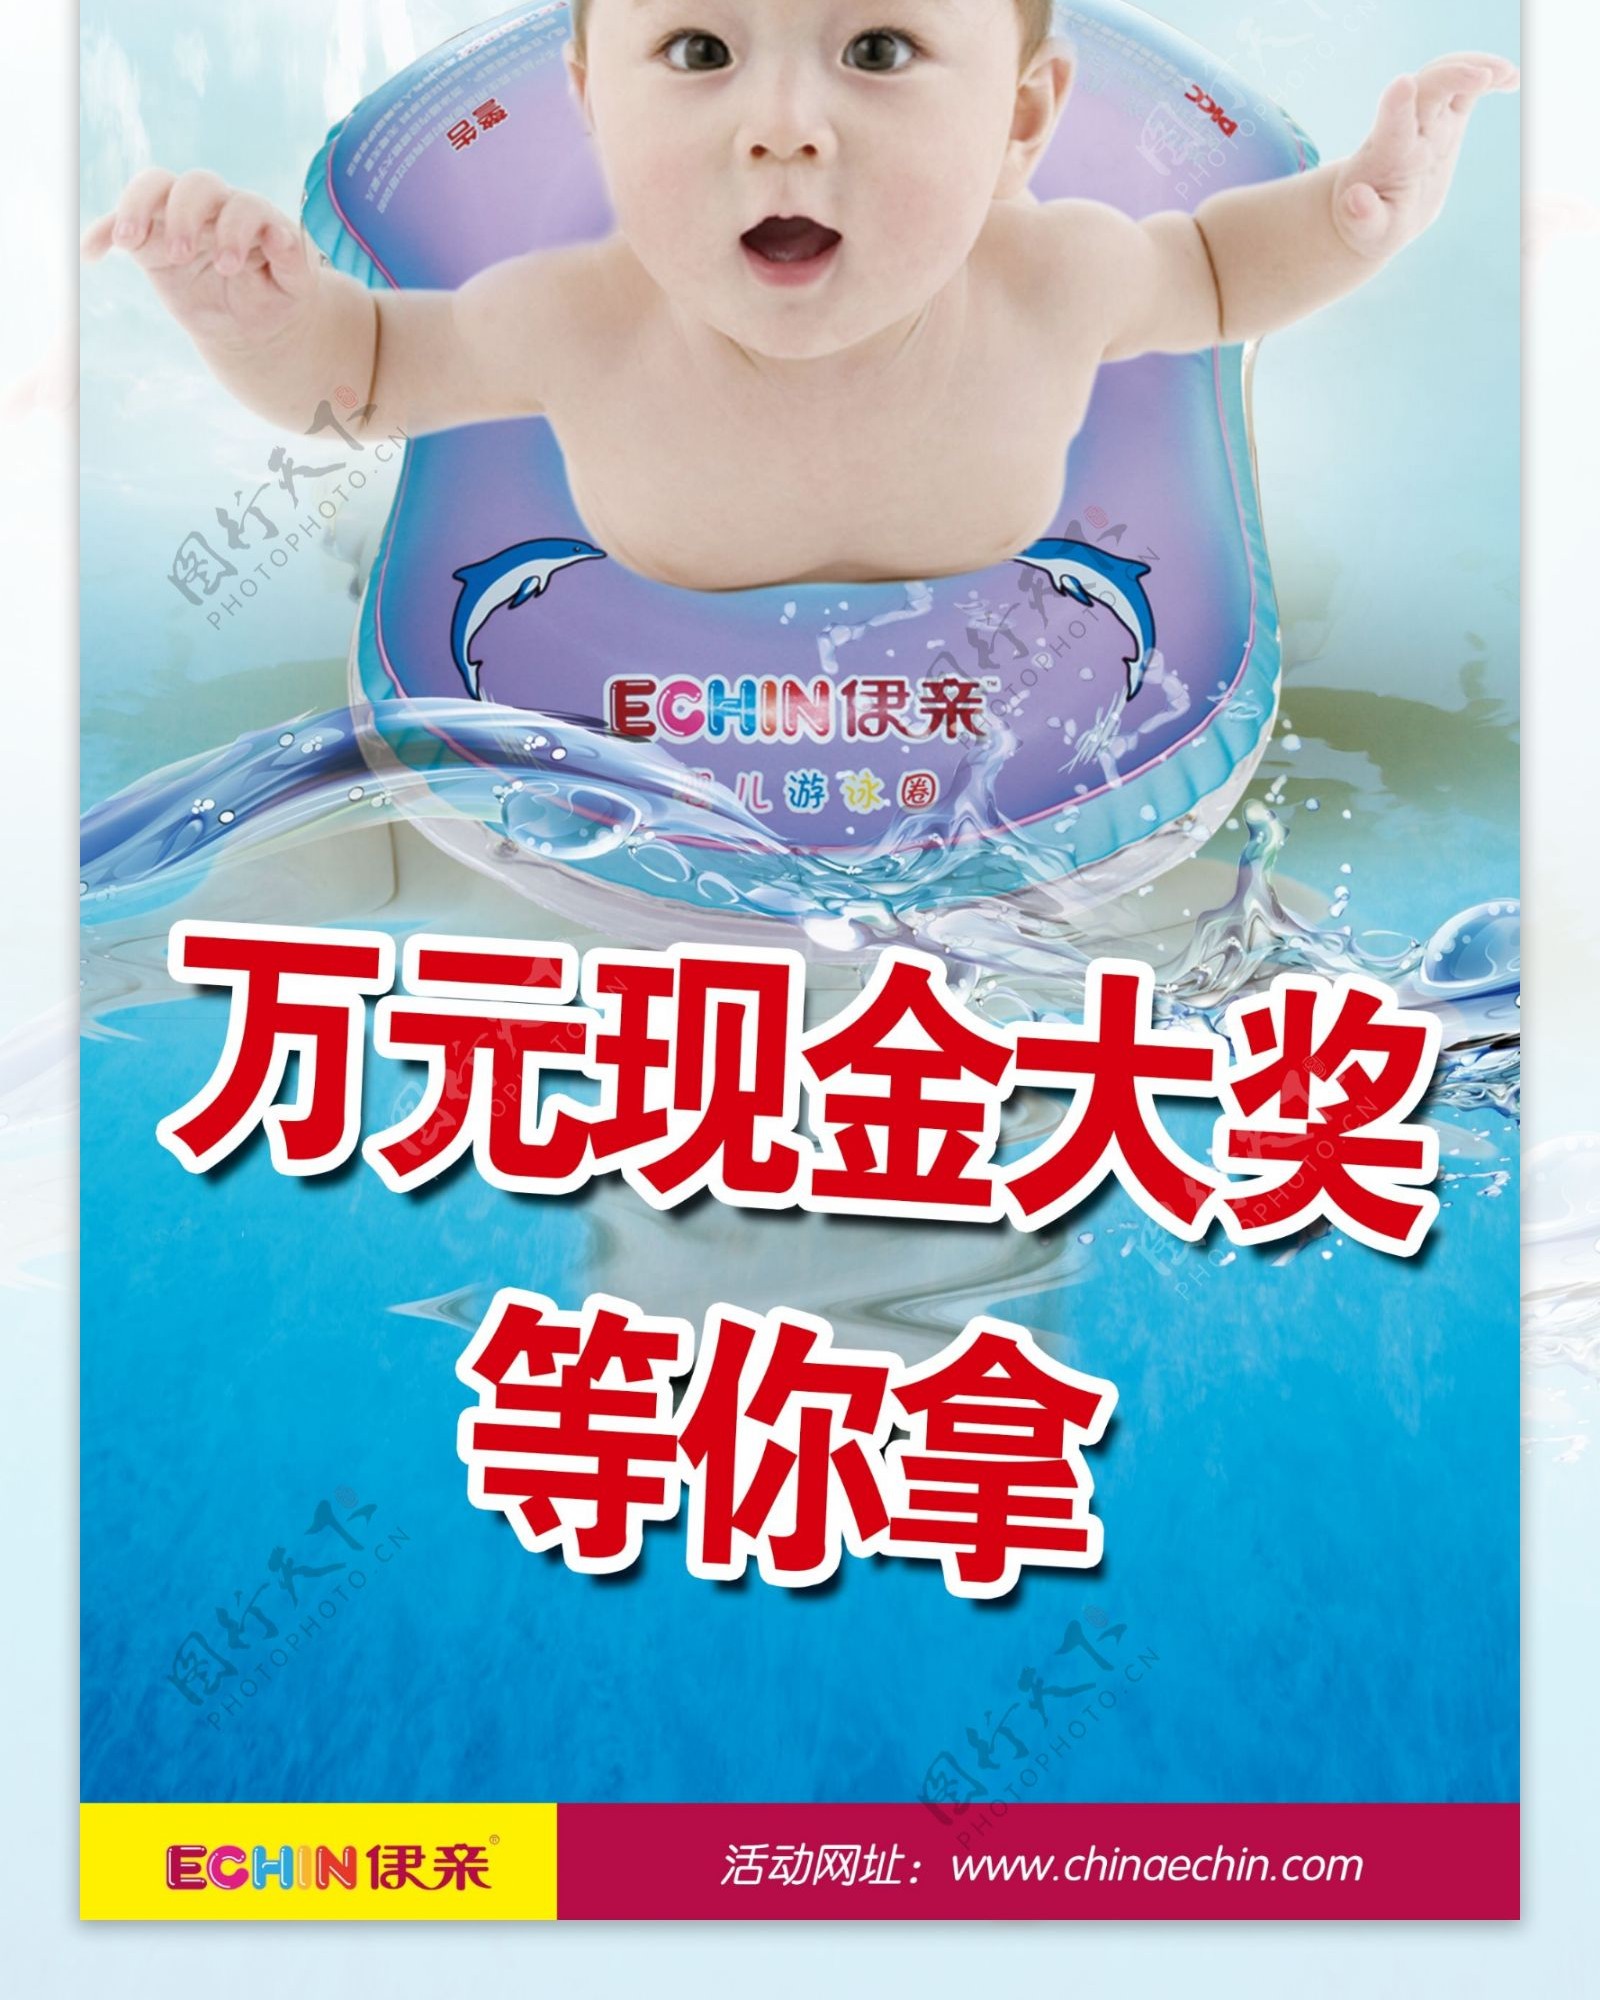 婴儿游泳大赛展架图片